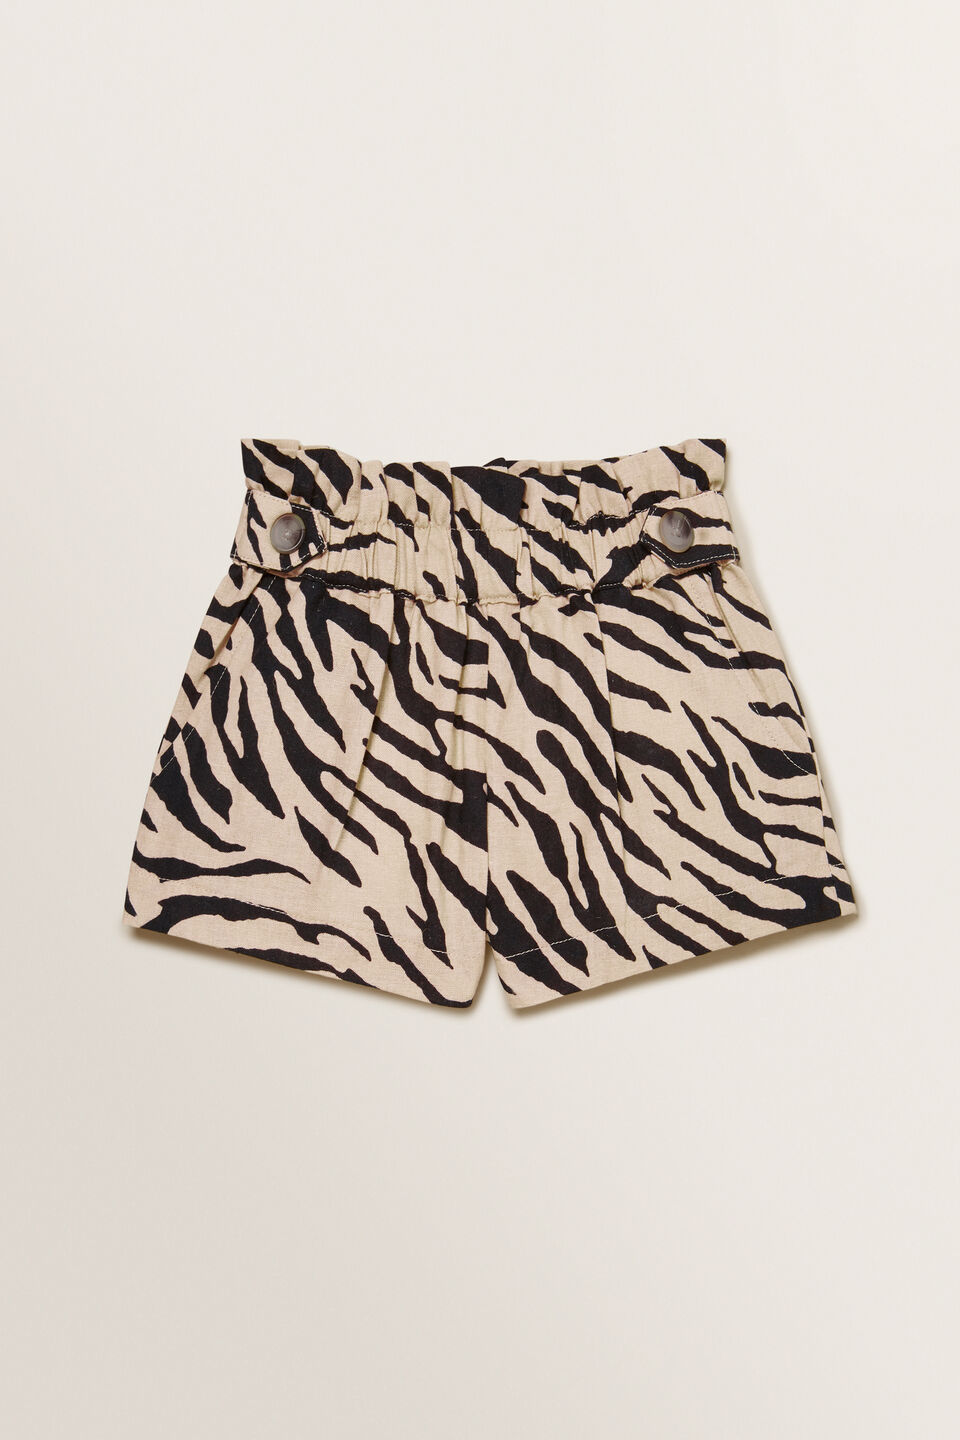 Zebra Shorts  